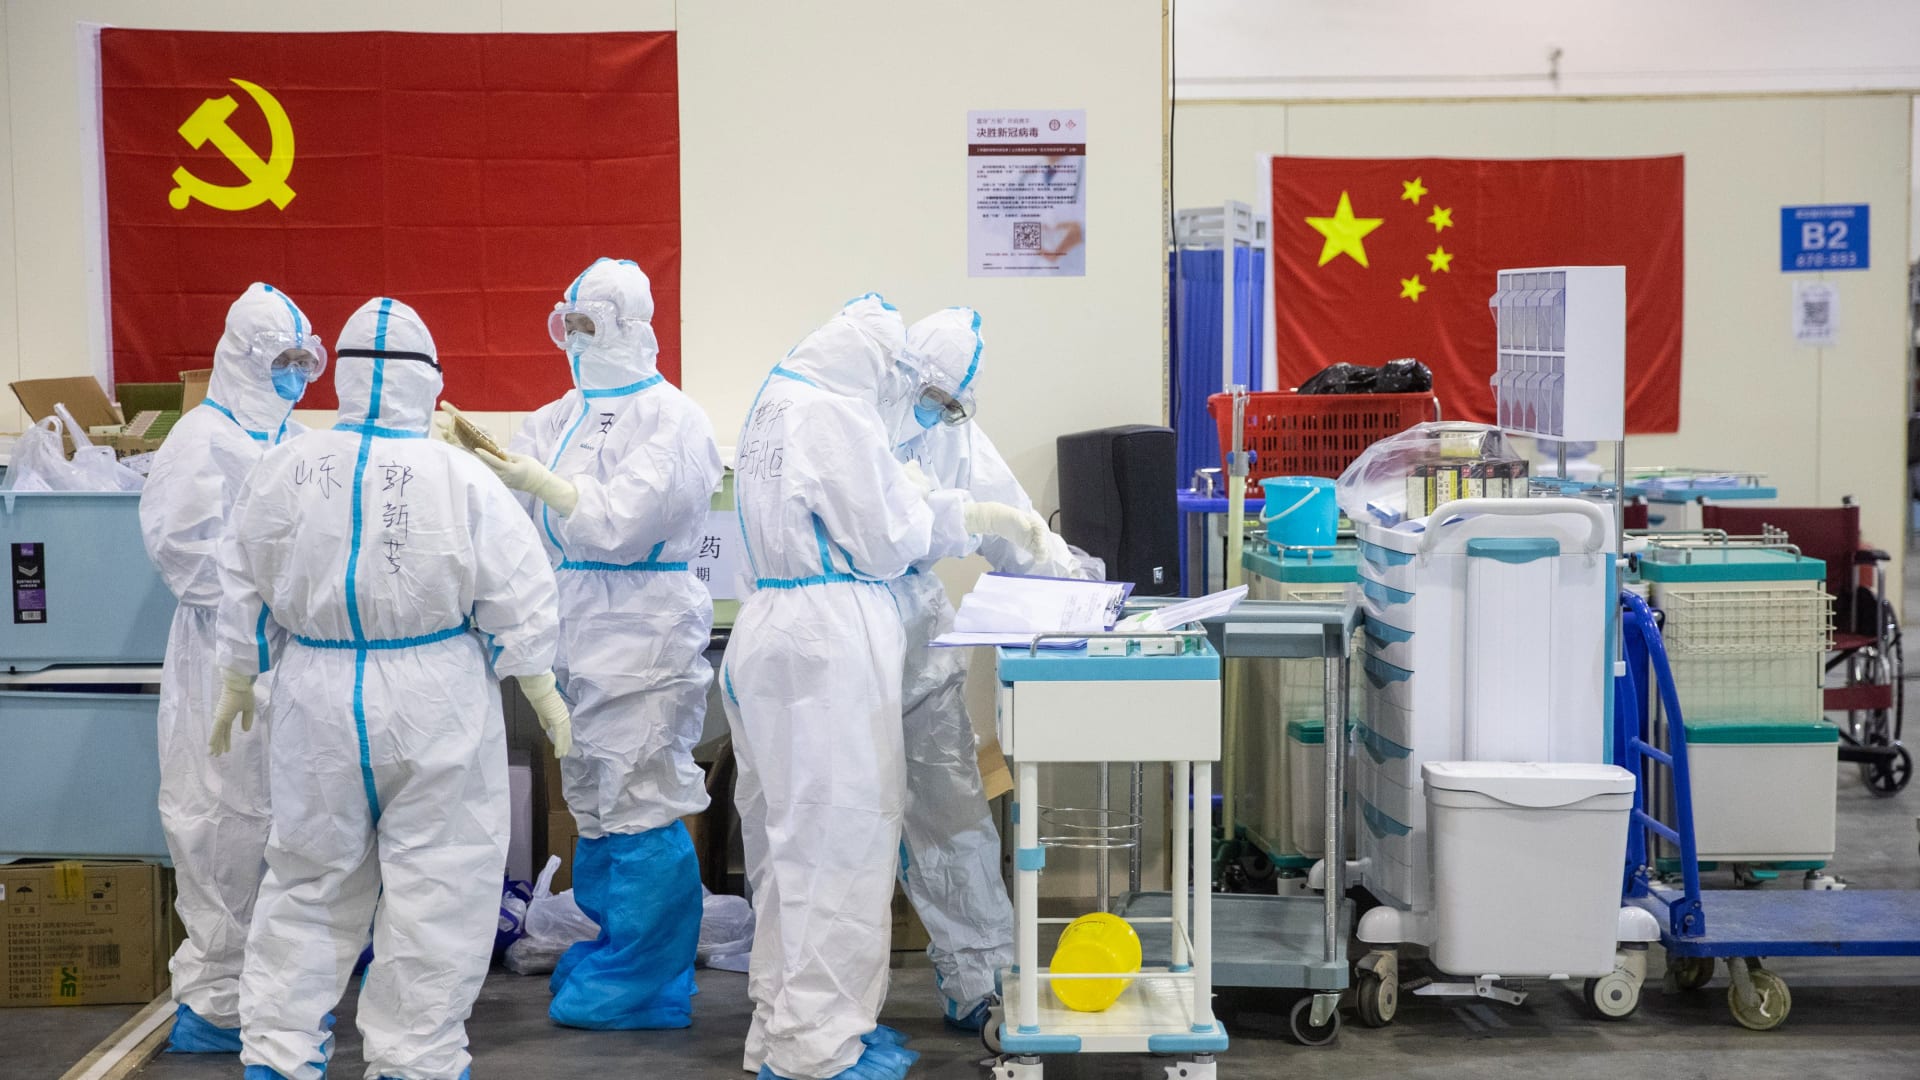 وفاة الطبيب الصيني لي وين ليانغ الذي حذر من فيروس كورونا